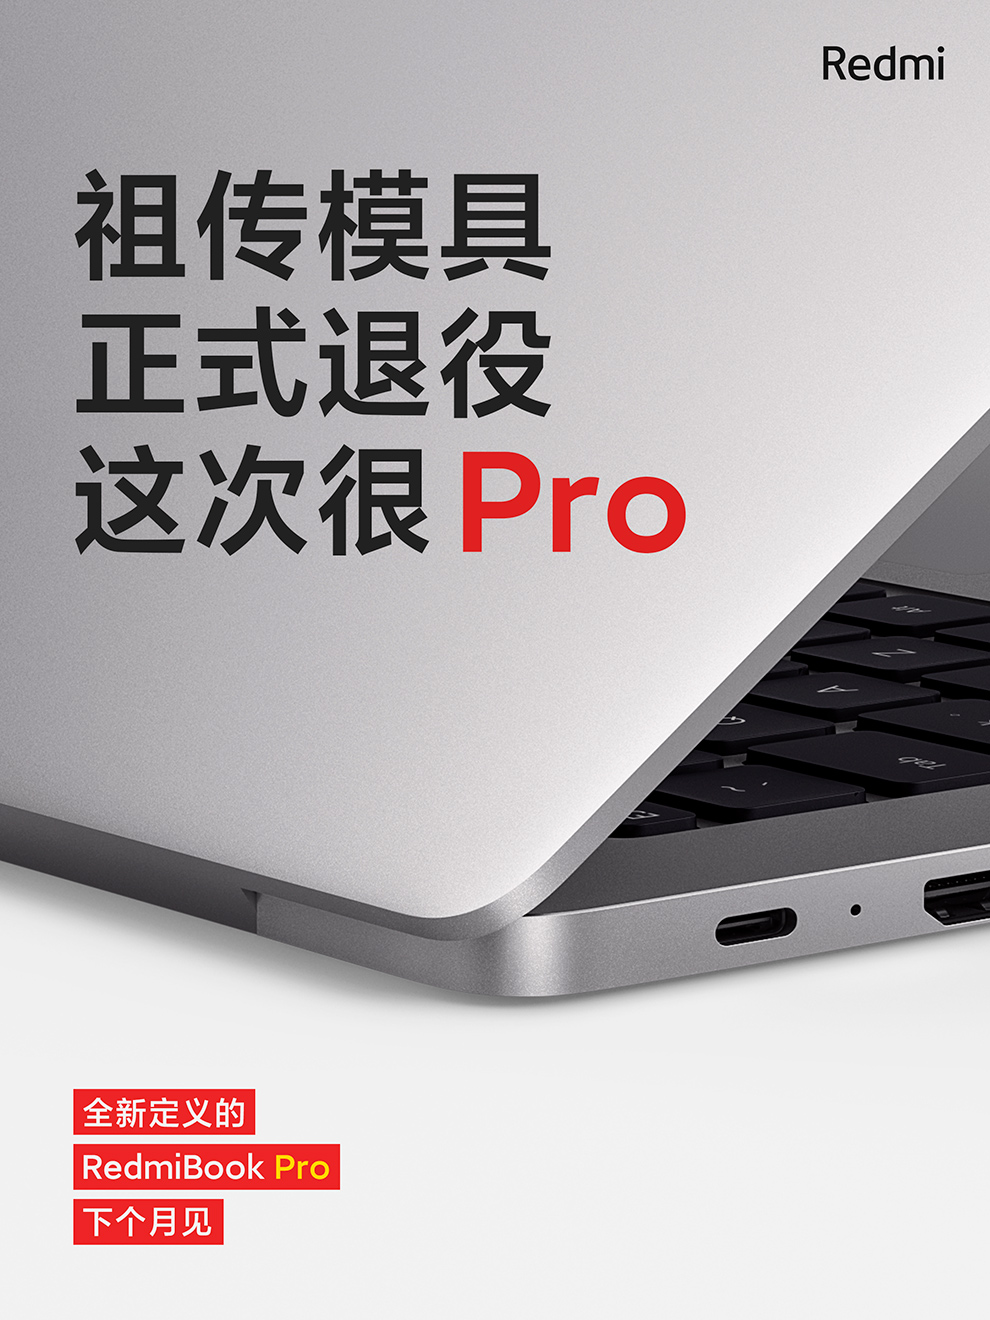 Ноутбук Xiaomi RedmiBook Pro